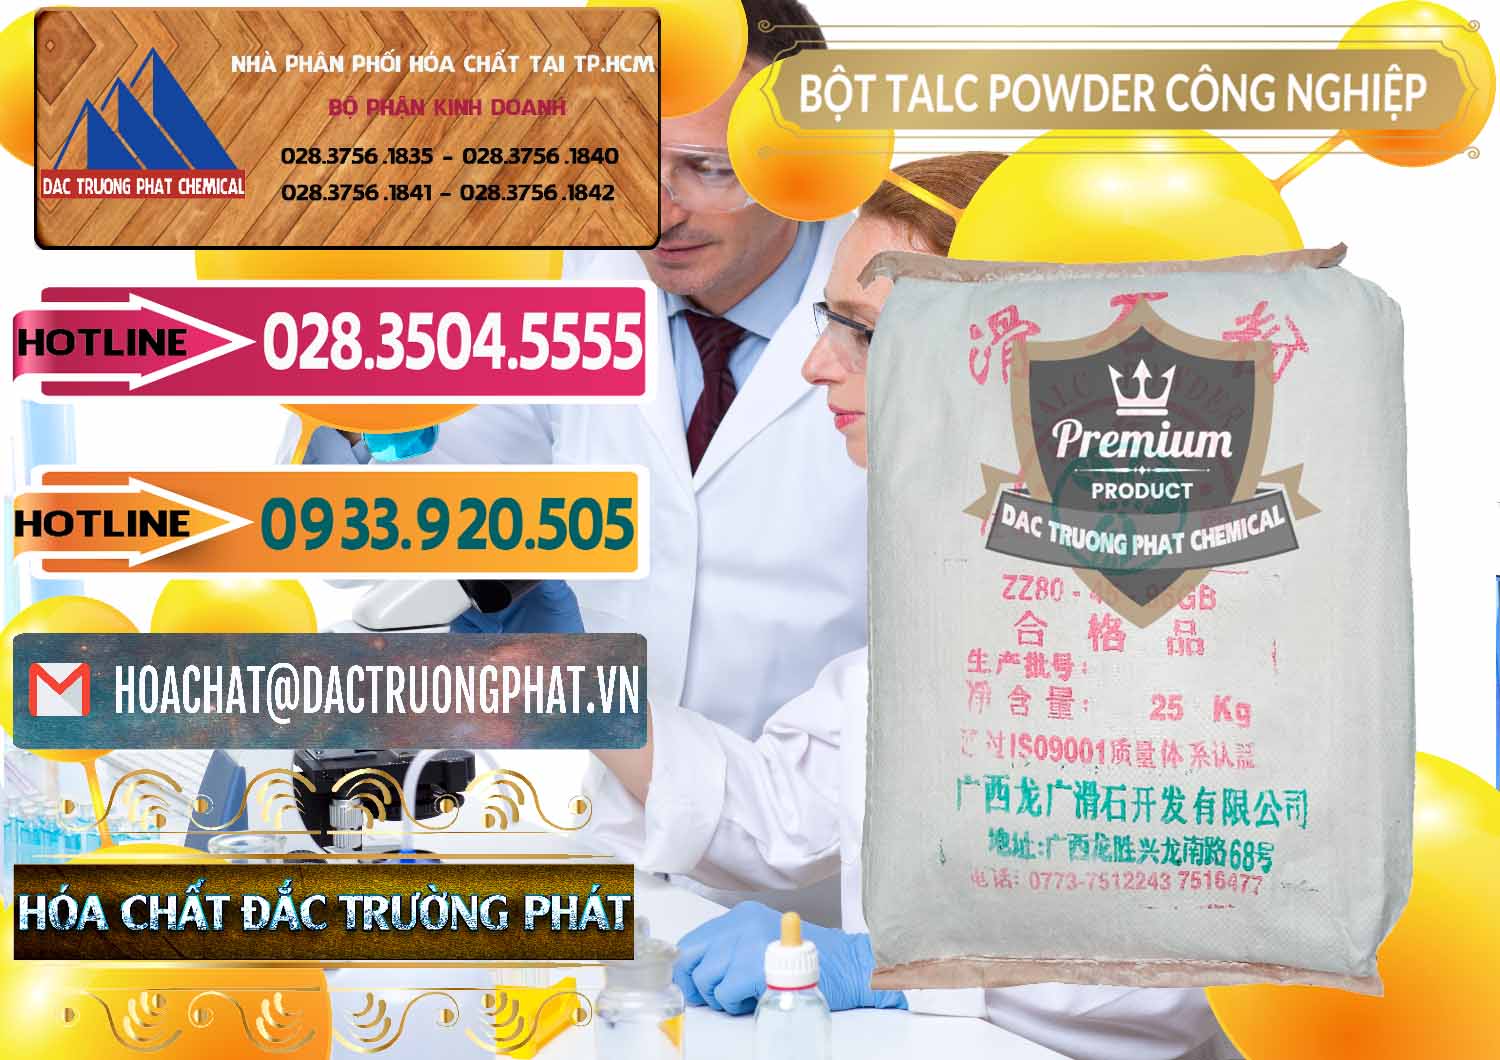 Đơn vị nhập khẩu - bán Bột Talc Powder Công Nghiệp Trung Quốc China - 0037 - Chuyên cung cấp ( phân phối ) hóa chất tại TP.HCM - dactruongphat.vn